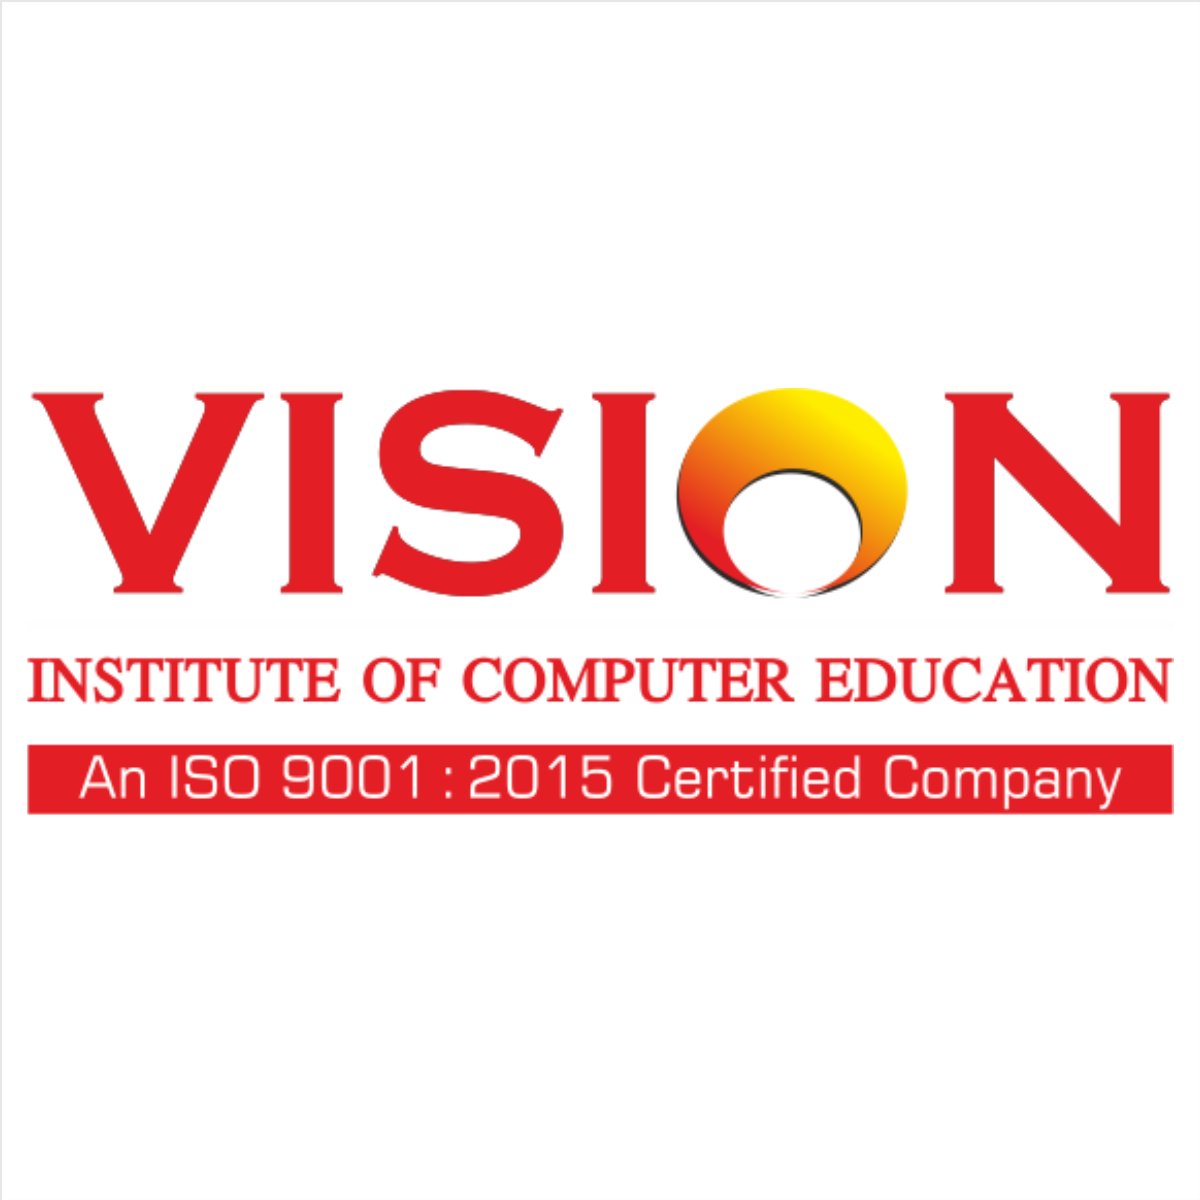 Virtual Vision Institute Logo